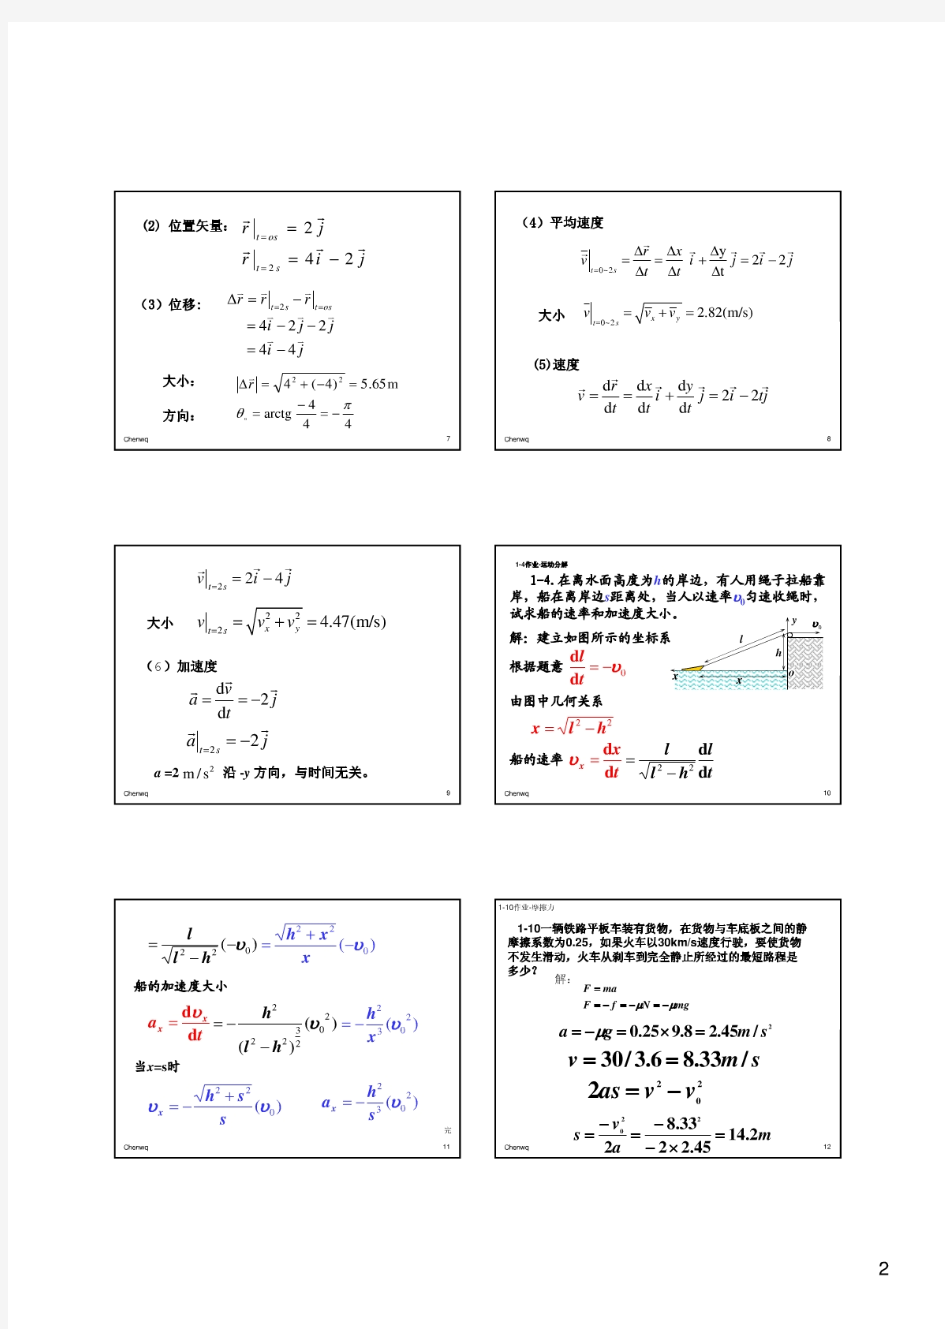 普通物理简明教程-胡盘新(第二版)大学物理习题-课后答案